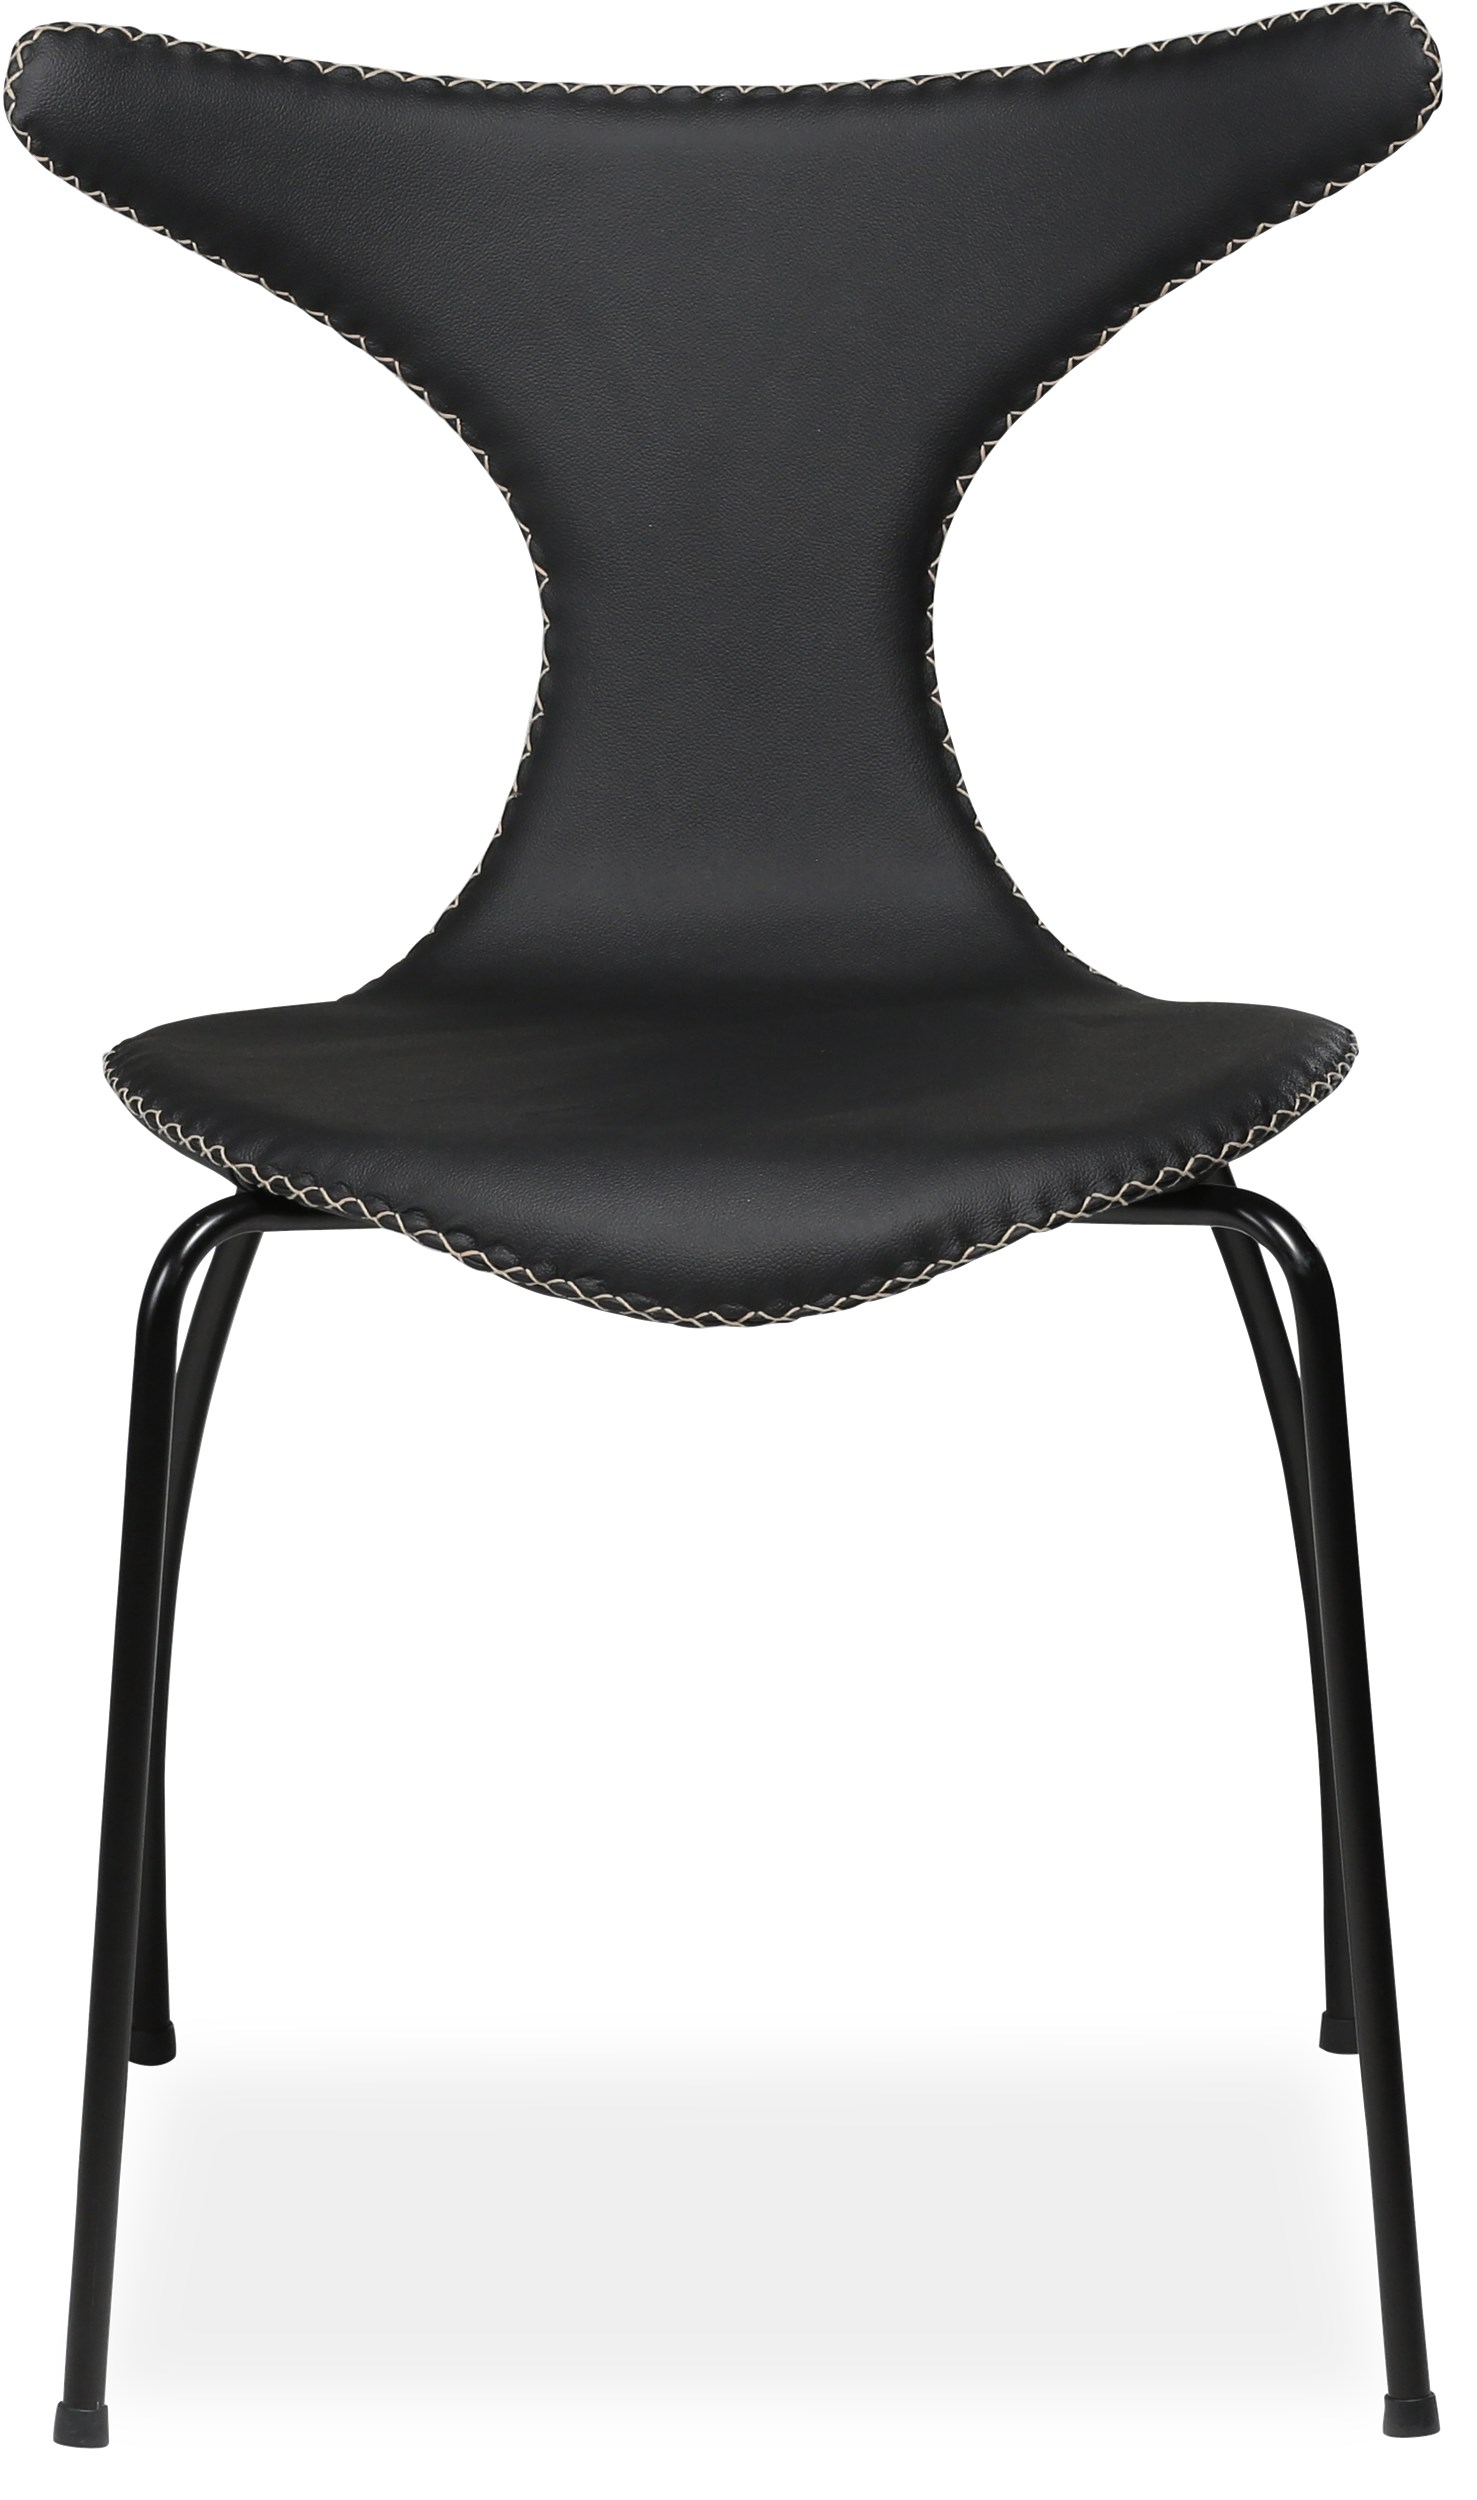 Dolphin matstol - Svart läder med kontrastsöm och ben i mattlackerad svart metall